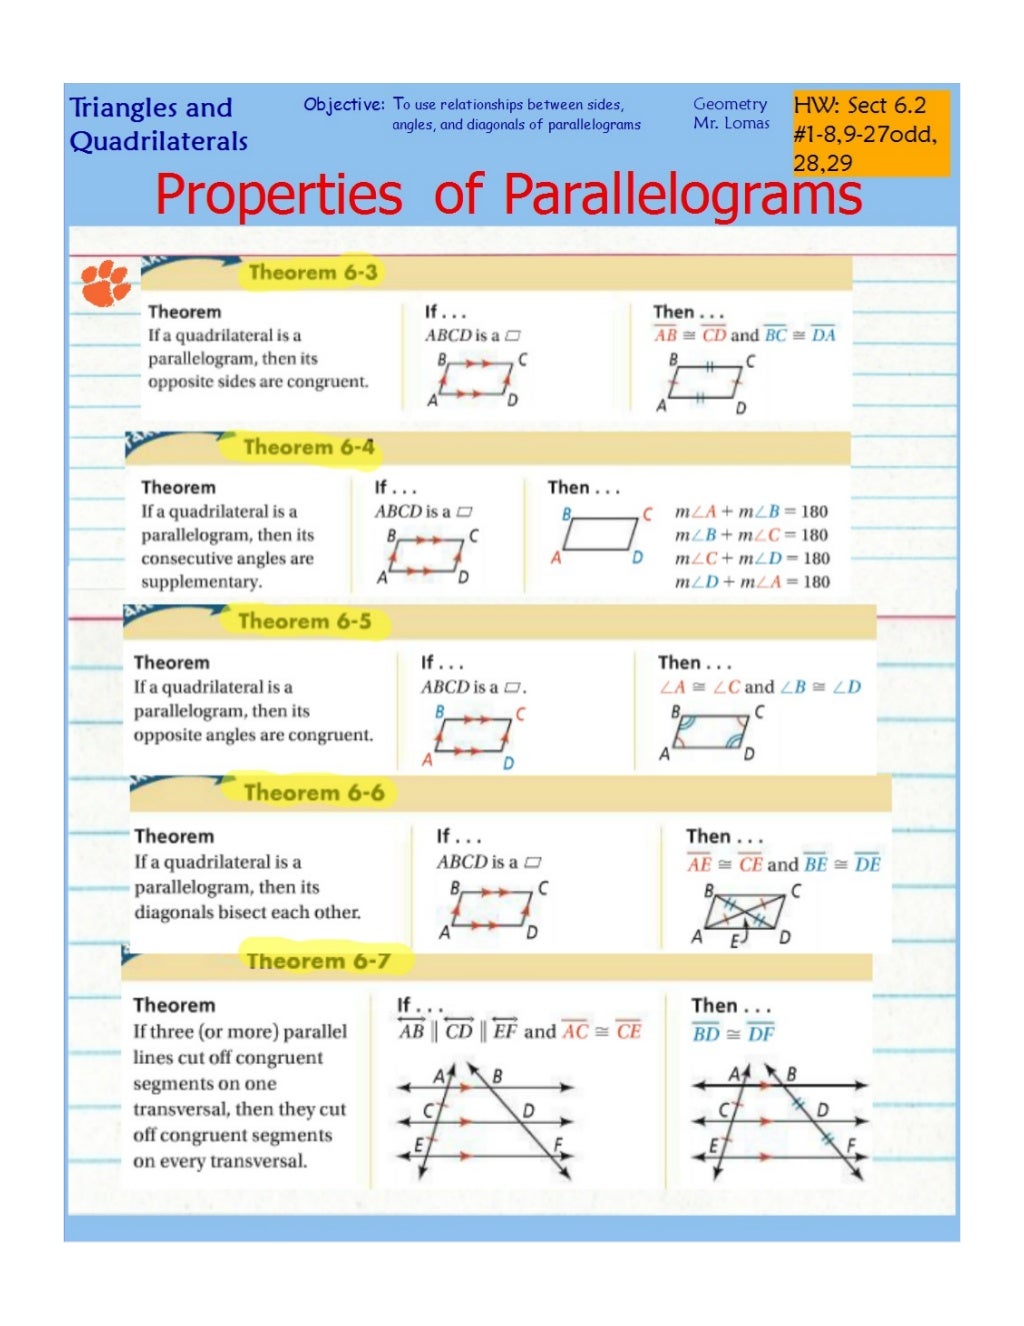 properties of parallelograms assignment